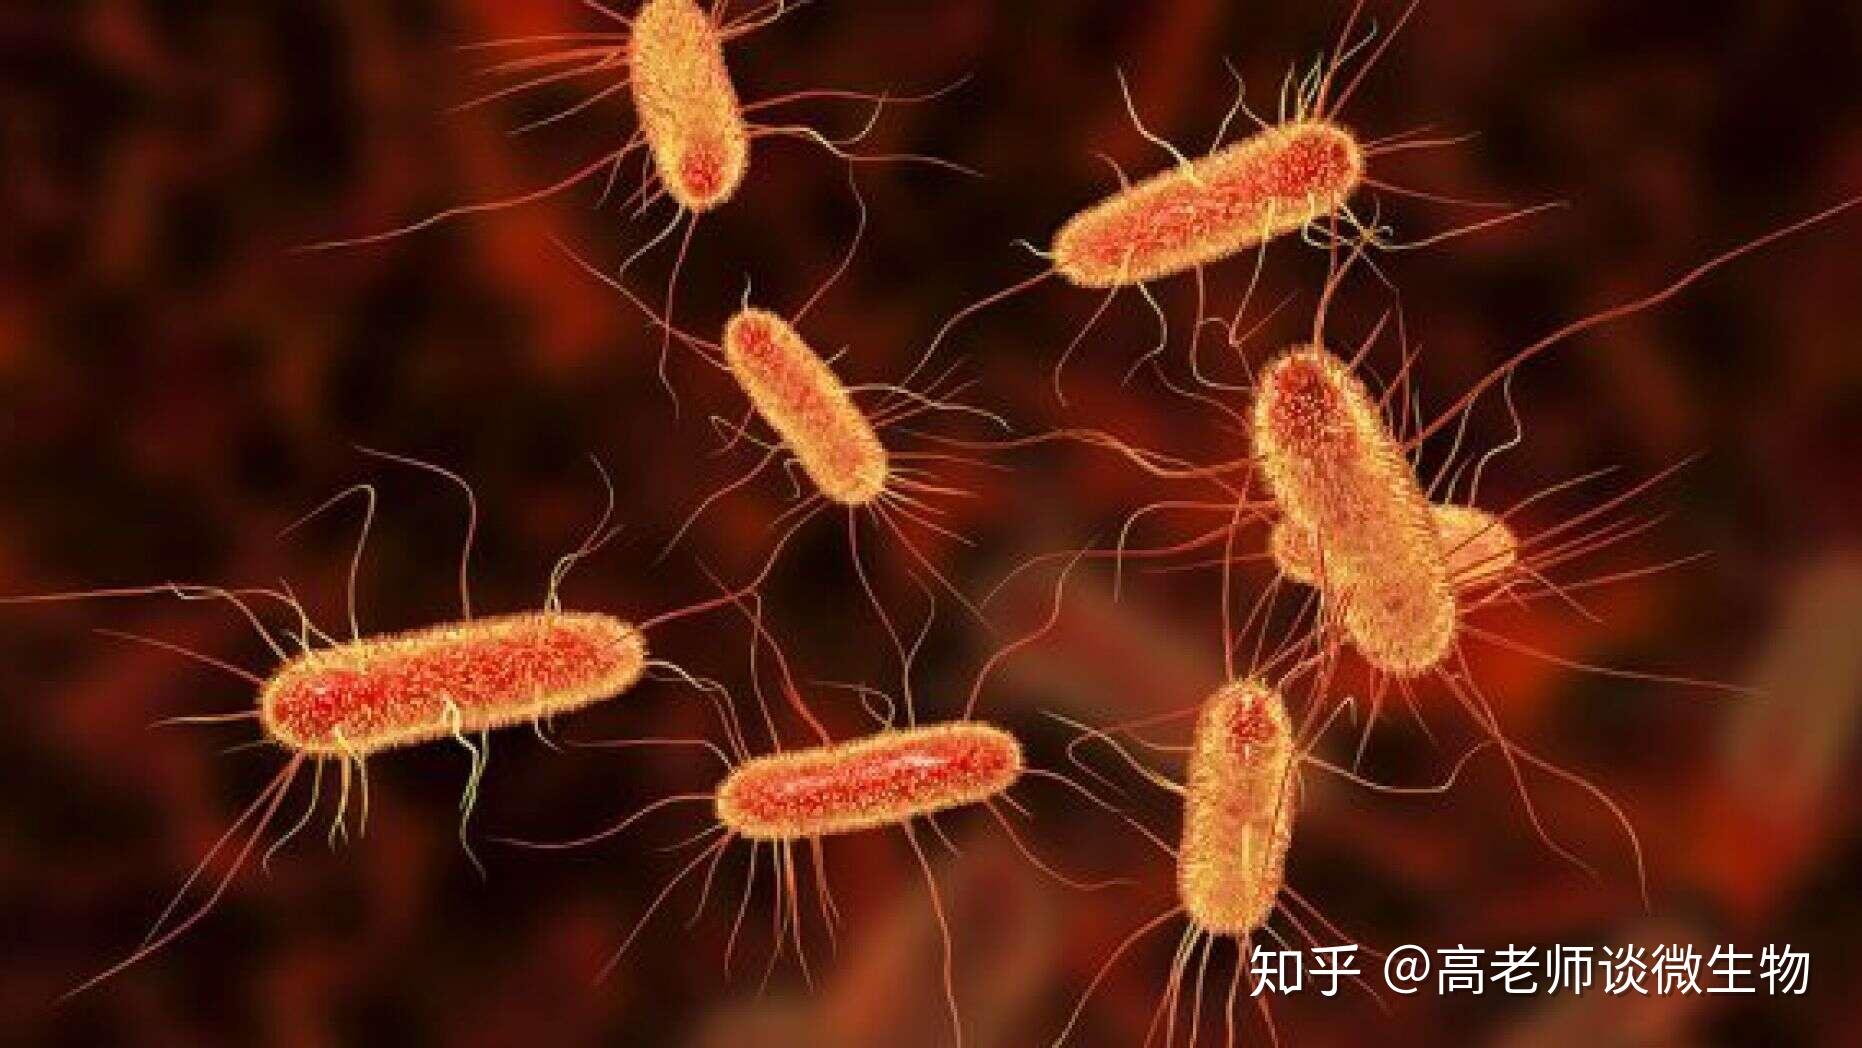 各位大神，有葡萄球菌，结核杆菌，大肠杆菌，蜡样芽孢杆菌，炭疽杆菌的红蓝铅笔手绘图吗？